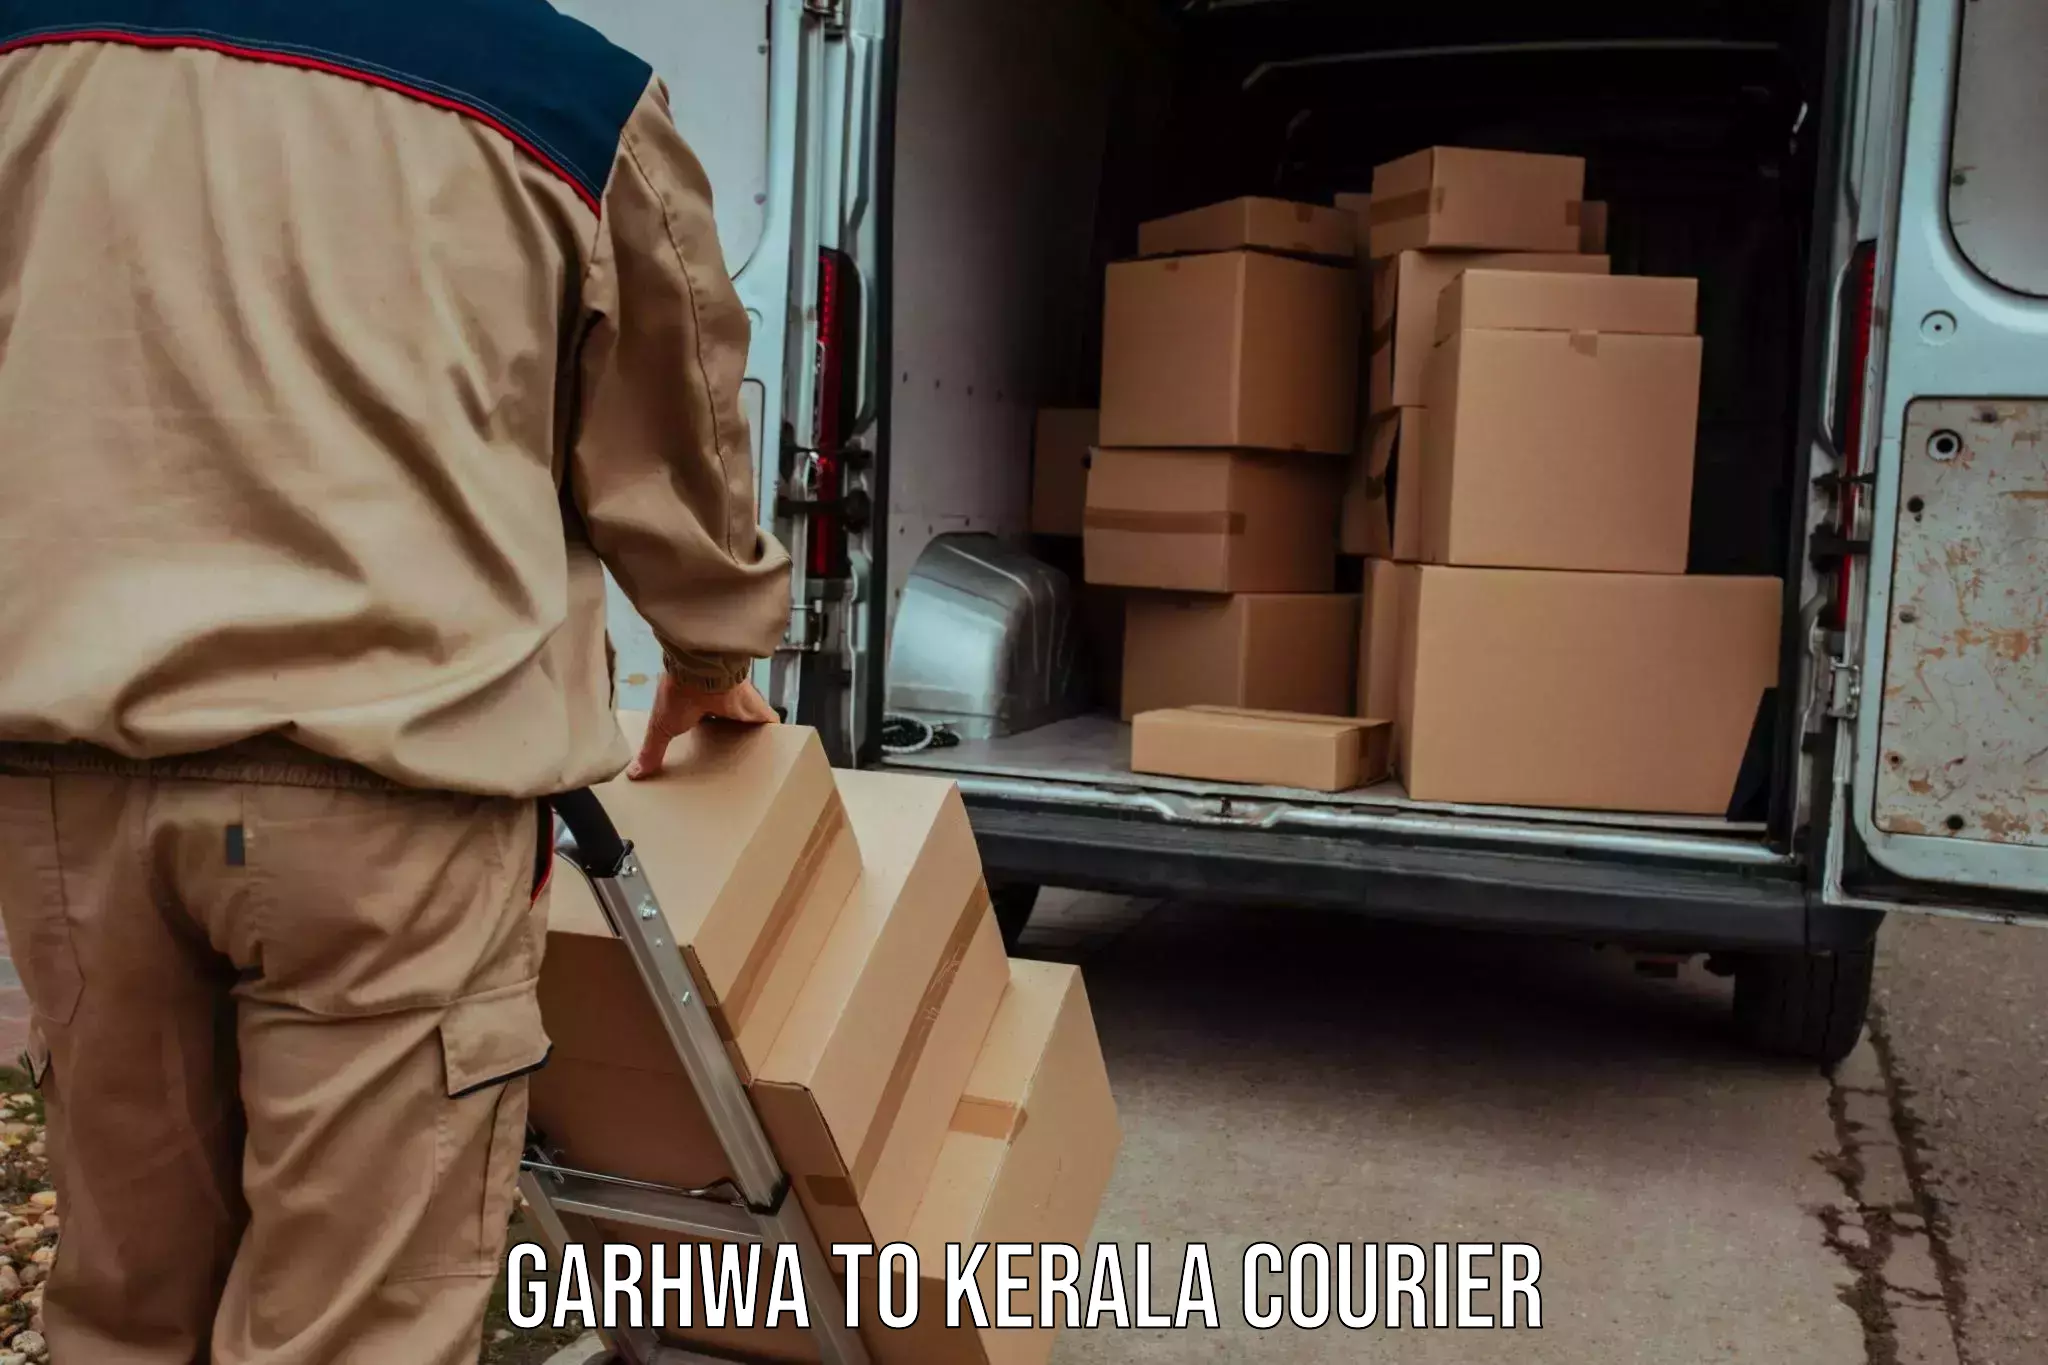 Business courier solutions Garhwa to Mahatma Gandhi University Kottayam